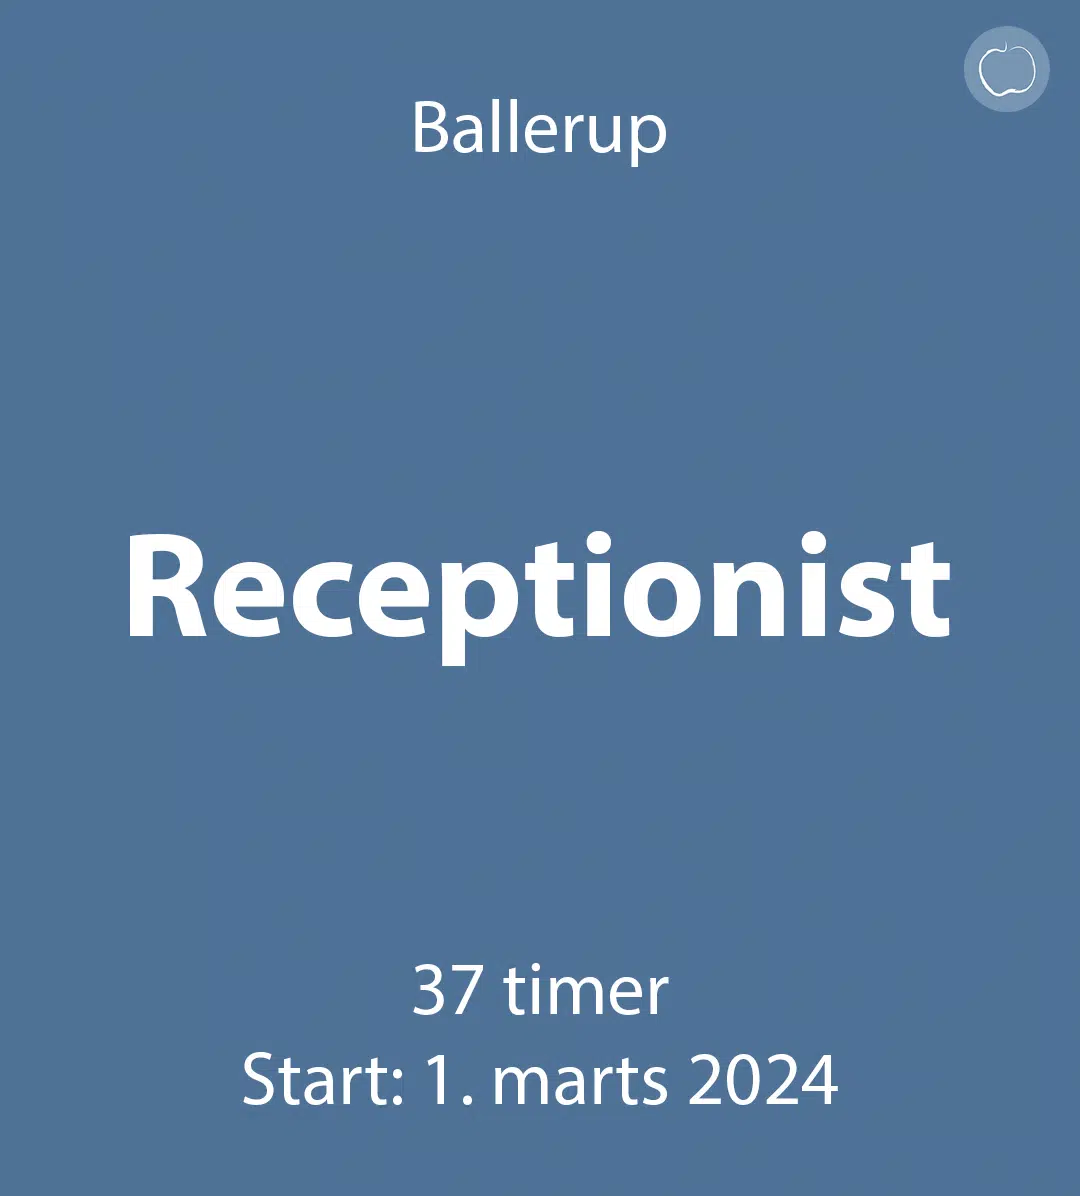 Receptionist Ballerup